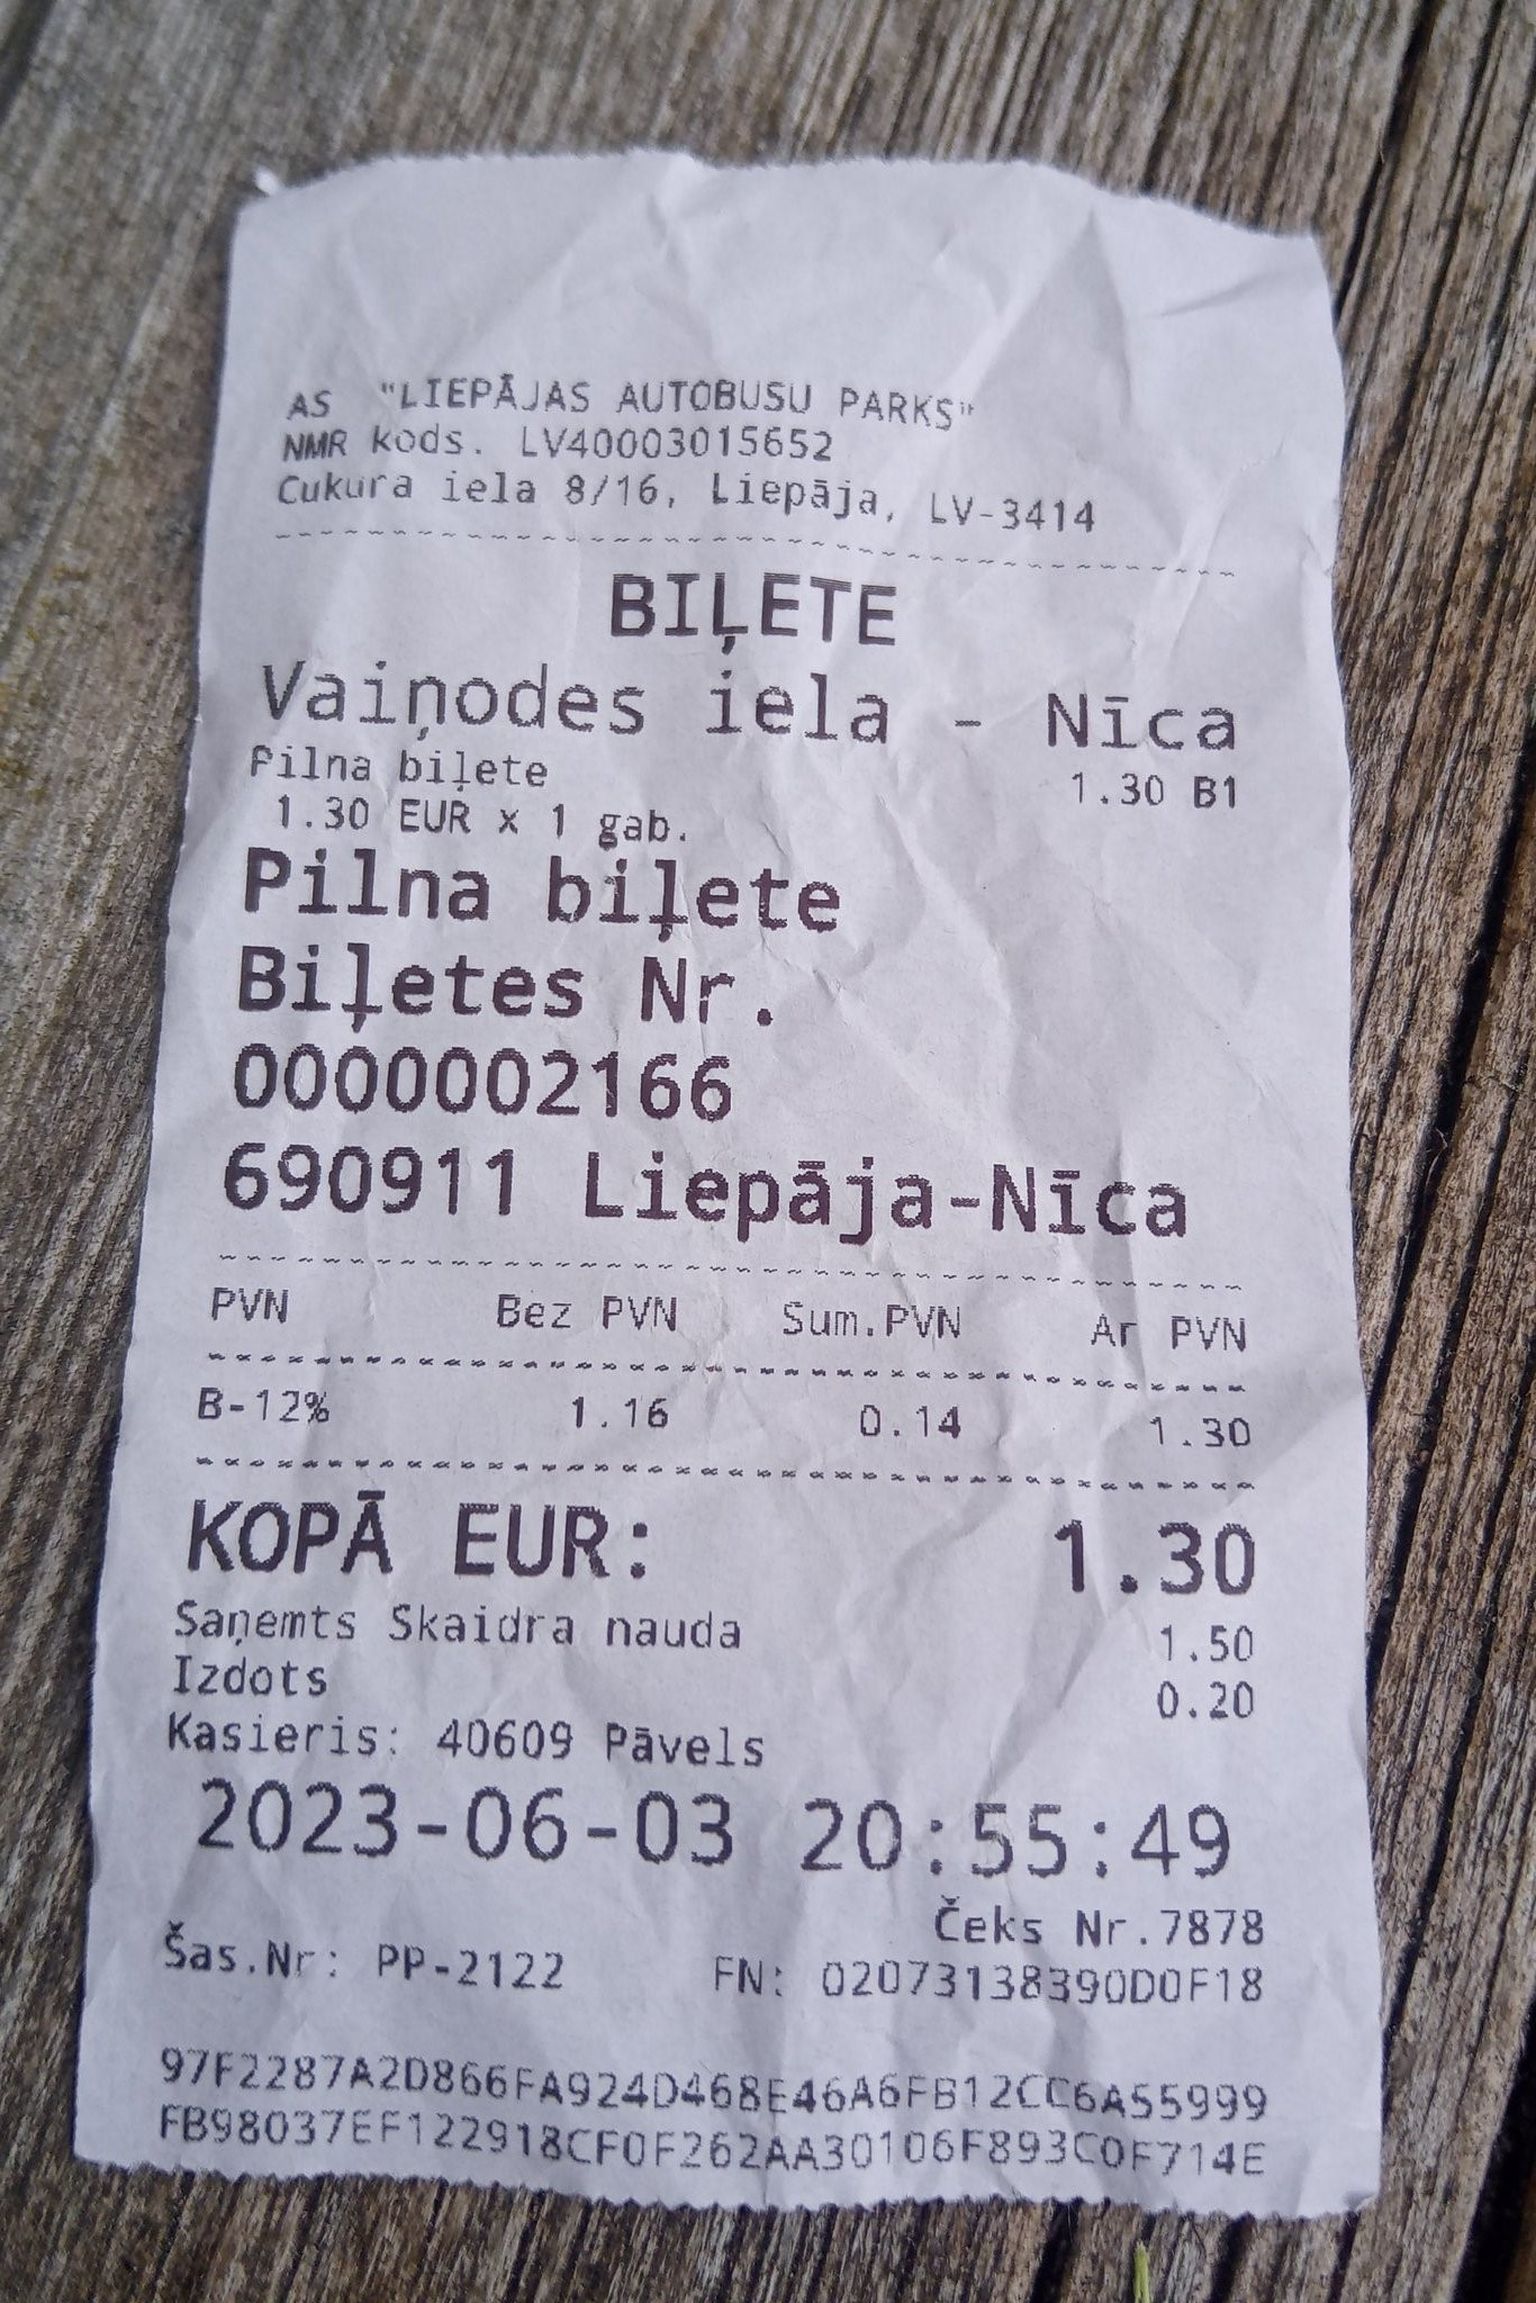 Билет автобусного рейса Лиепая - Ница